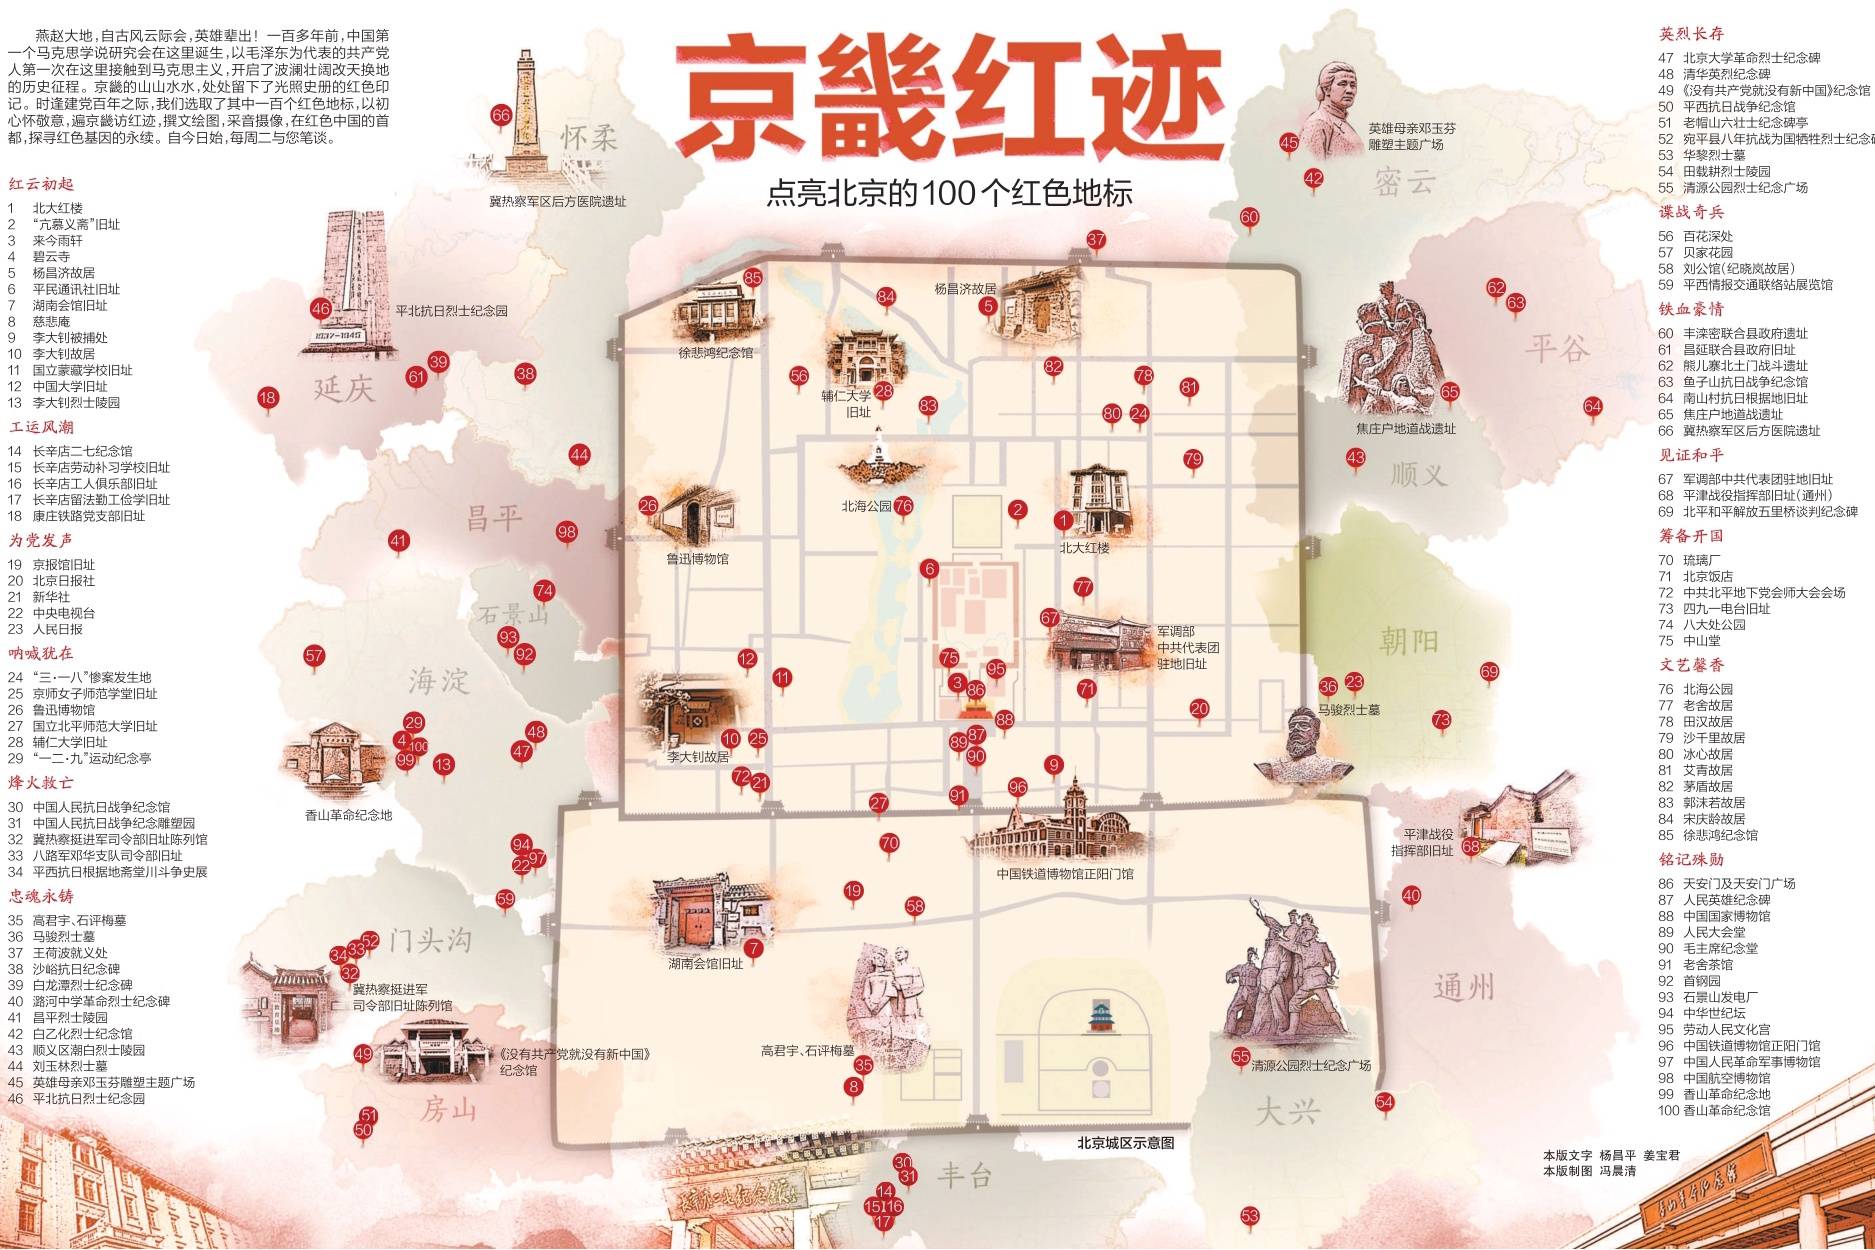 北京红色景点分布区域图 京畿红迹